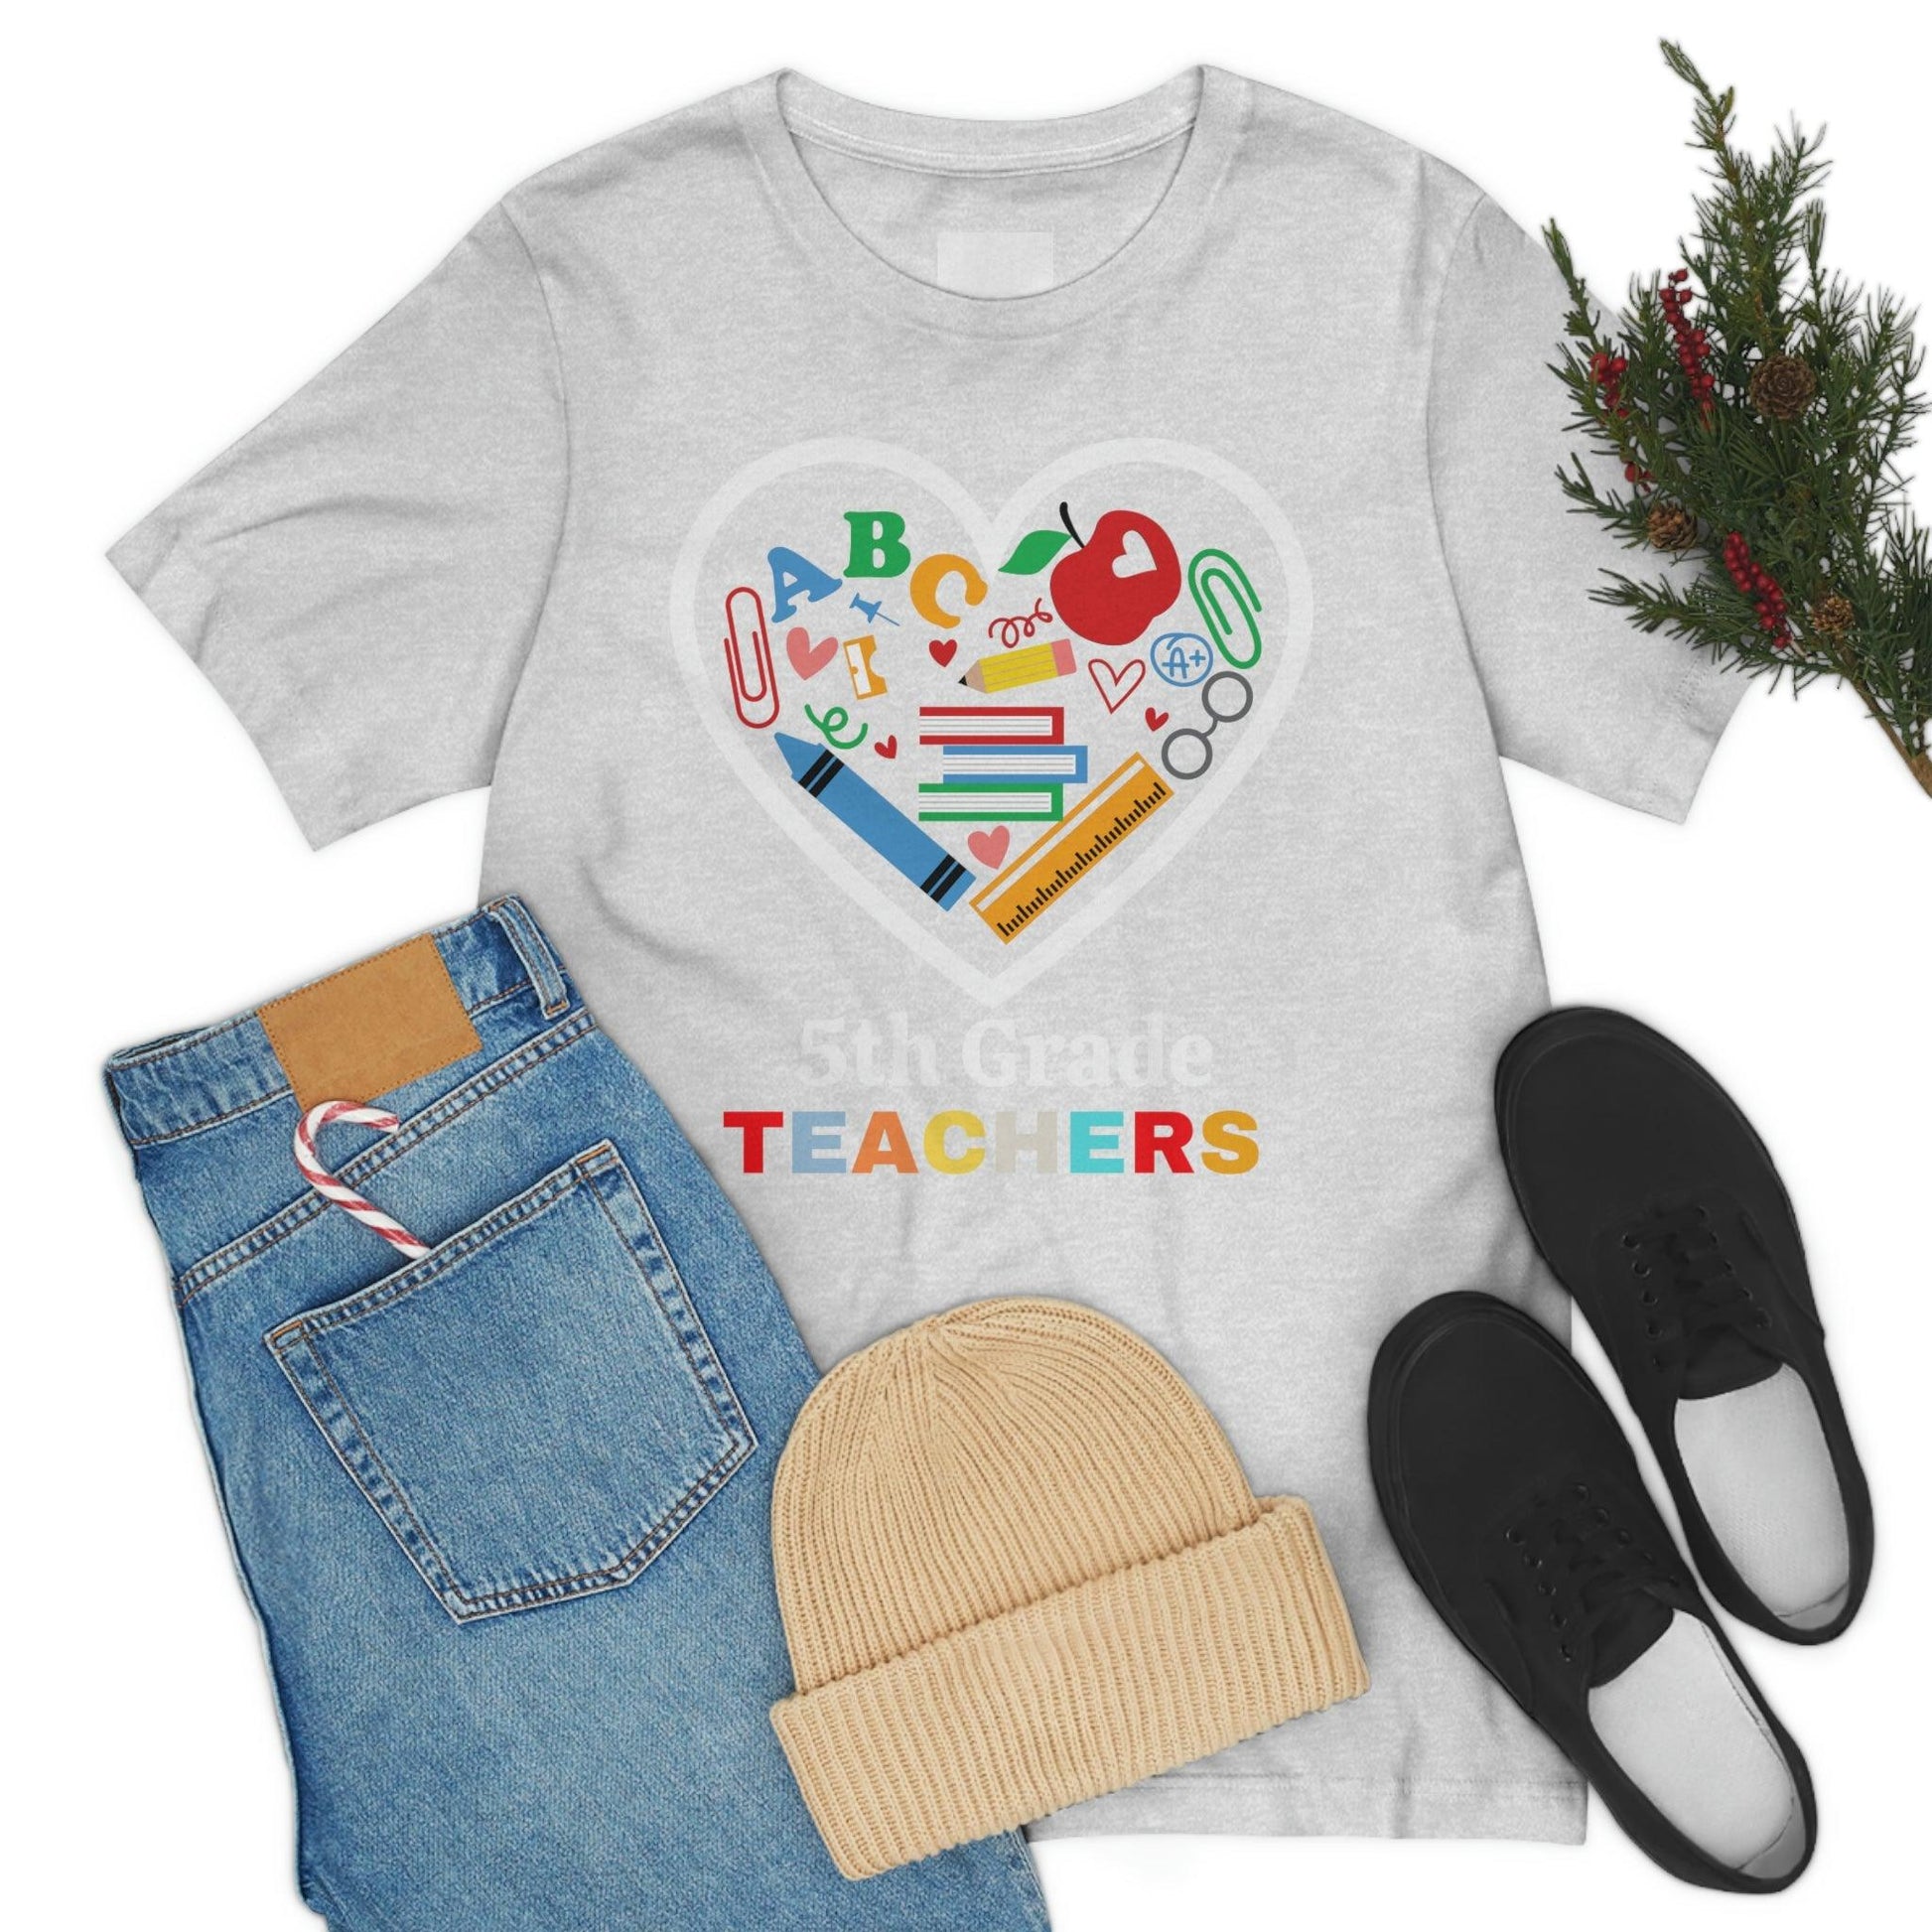 Love 5th Grade Teacher Shirt - Teacher Appreciation Shirt - Gift for Teachers - 5th Grade shirt - Giftsmojo